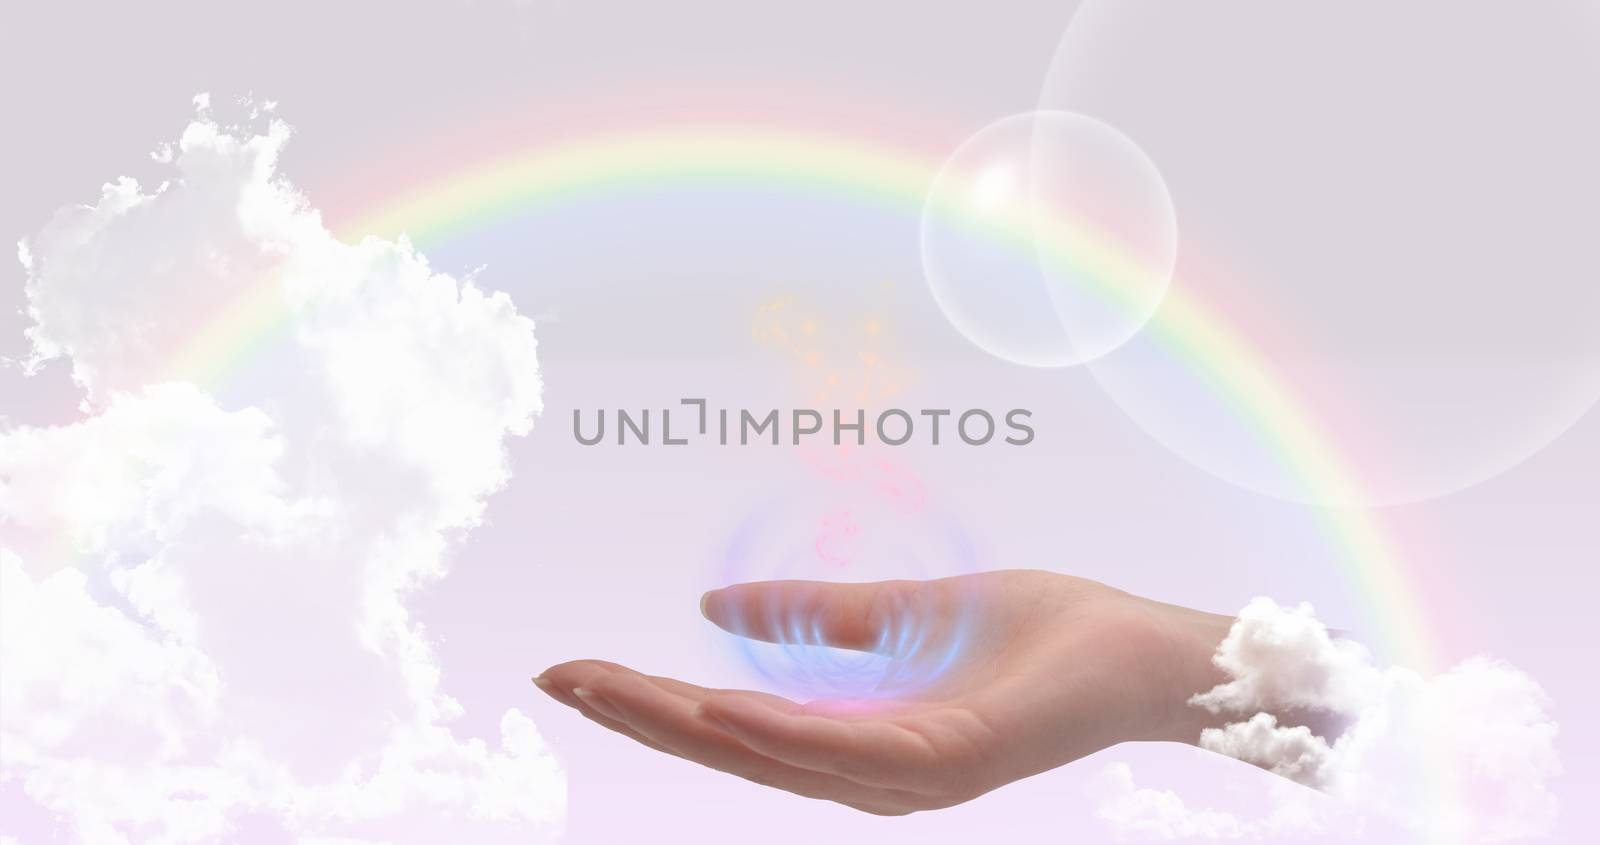 Healing hand website header/banner by stellar